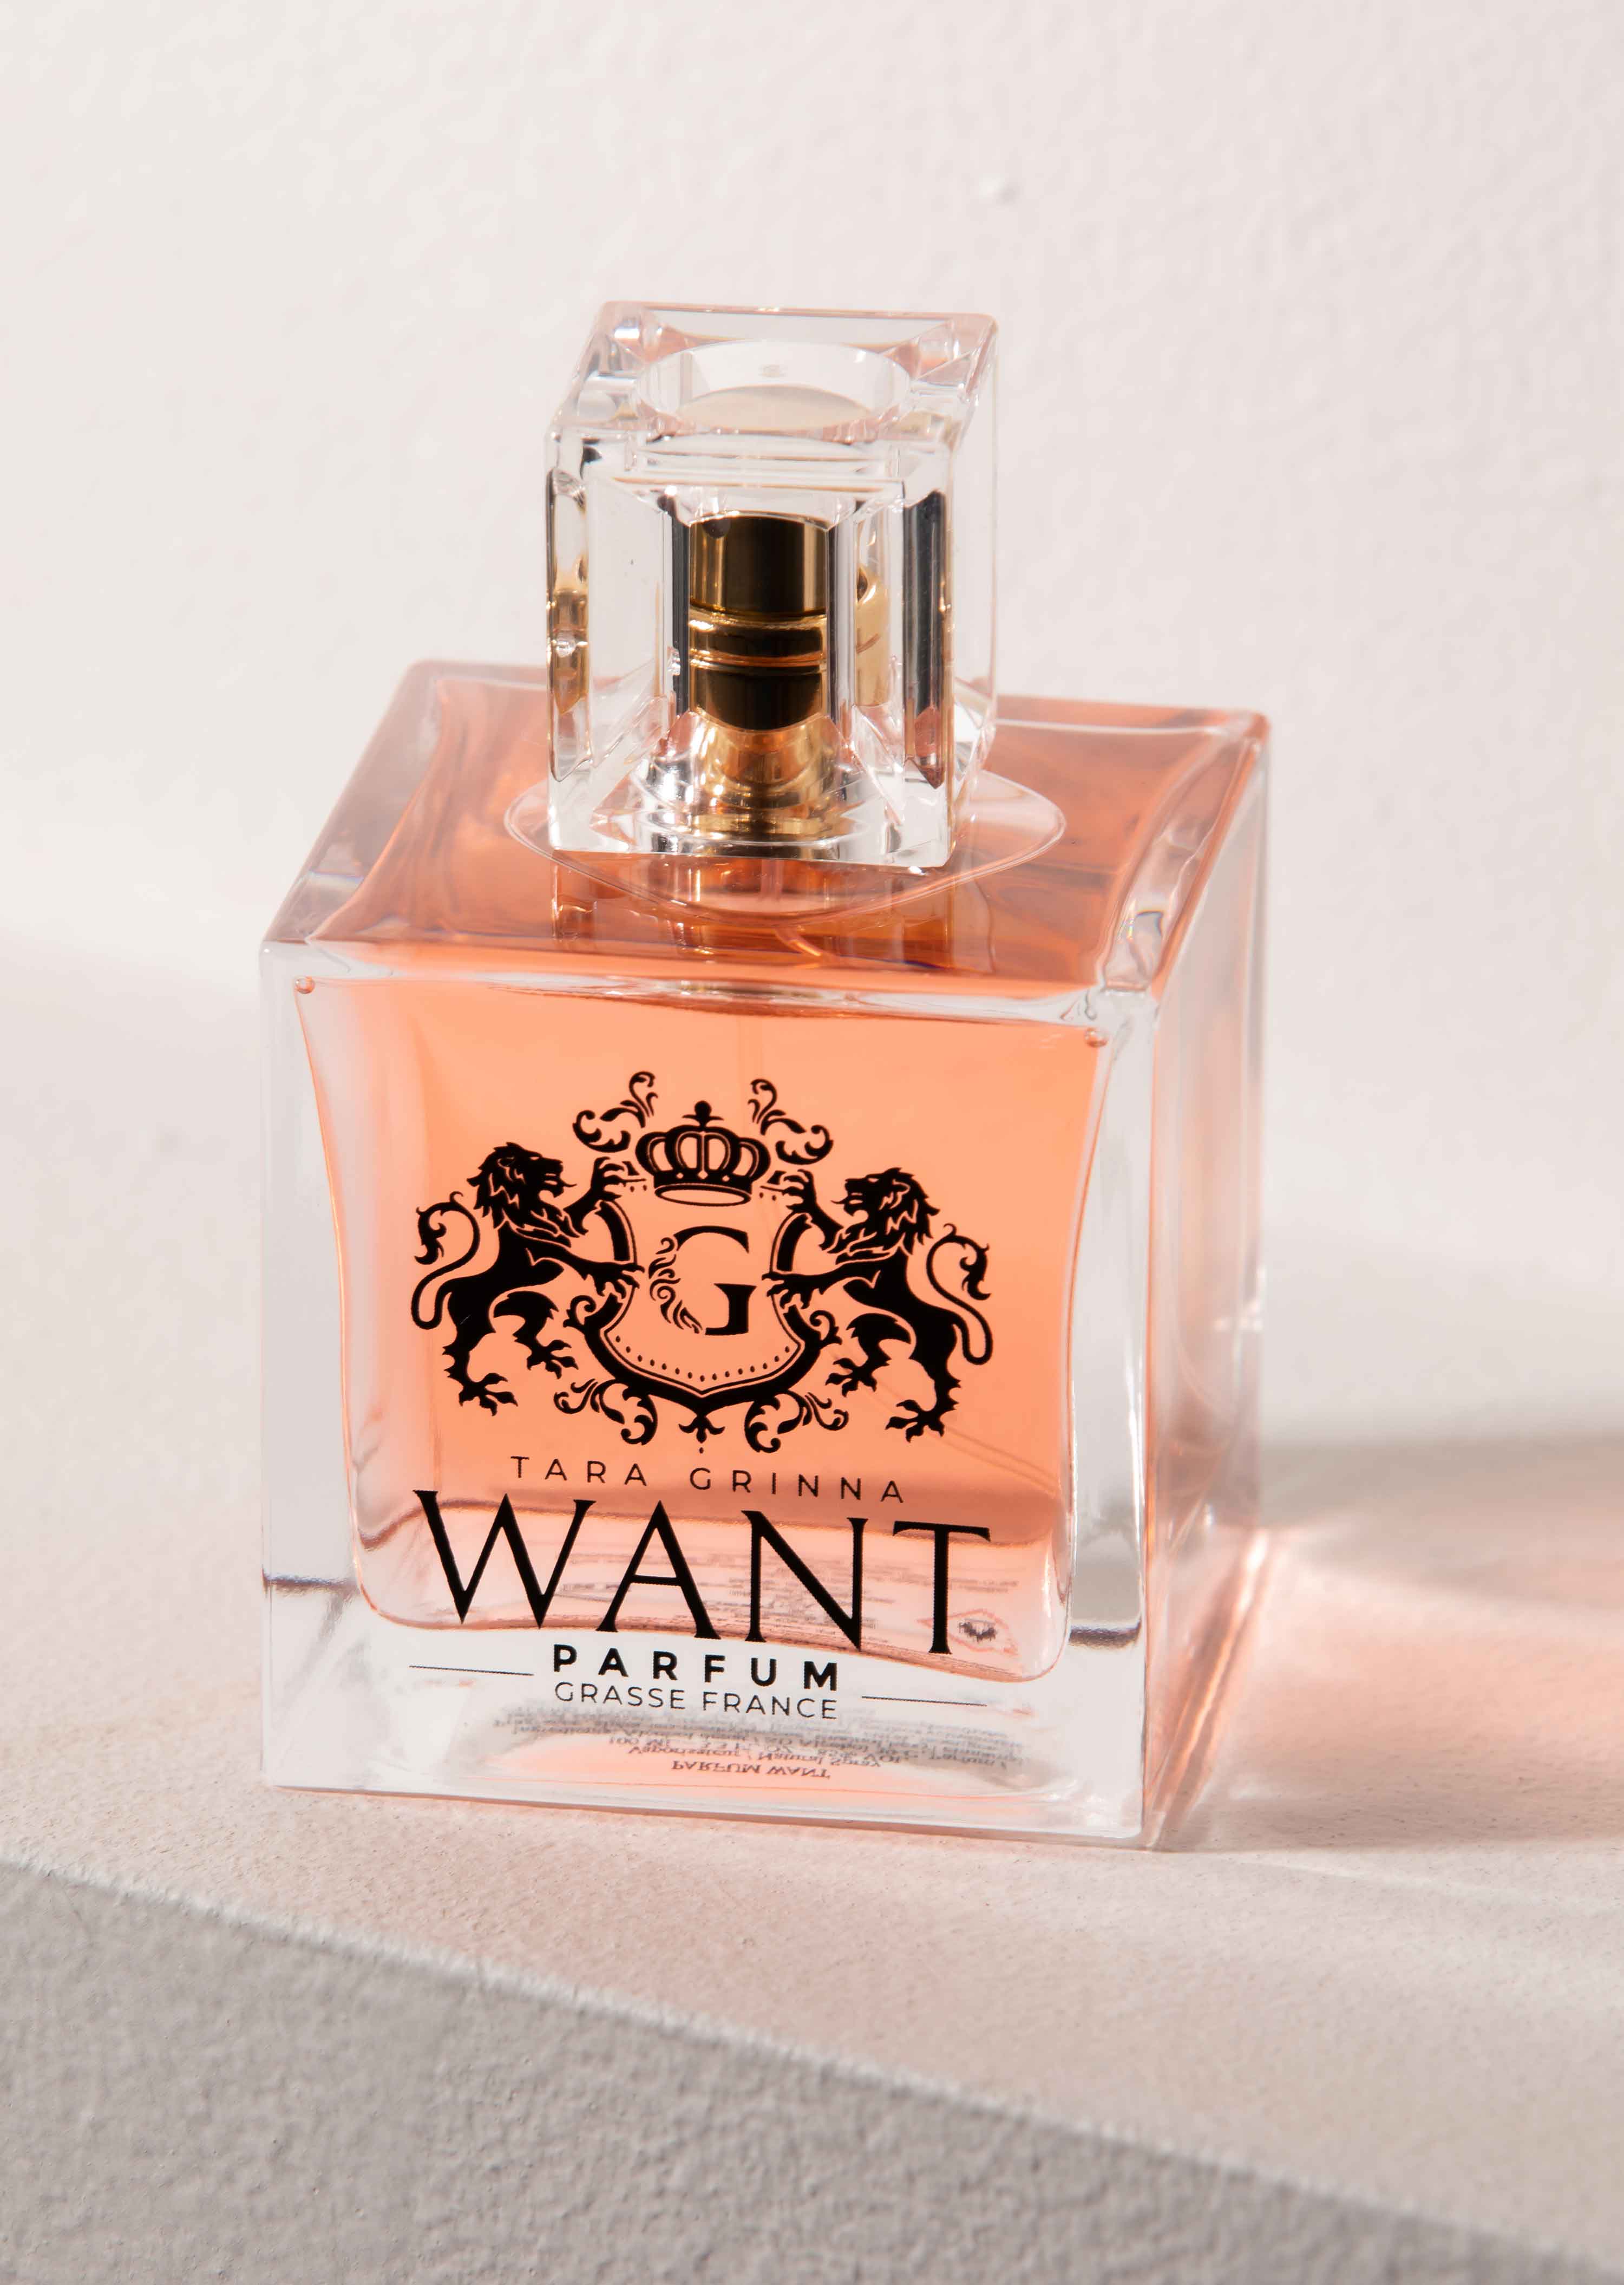 WANT Parfum